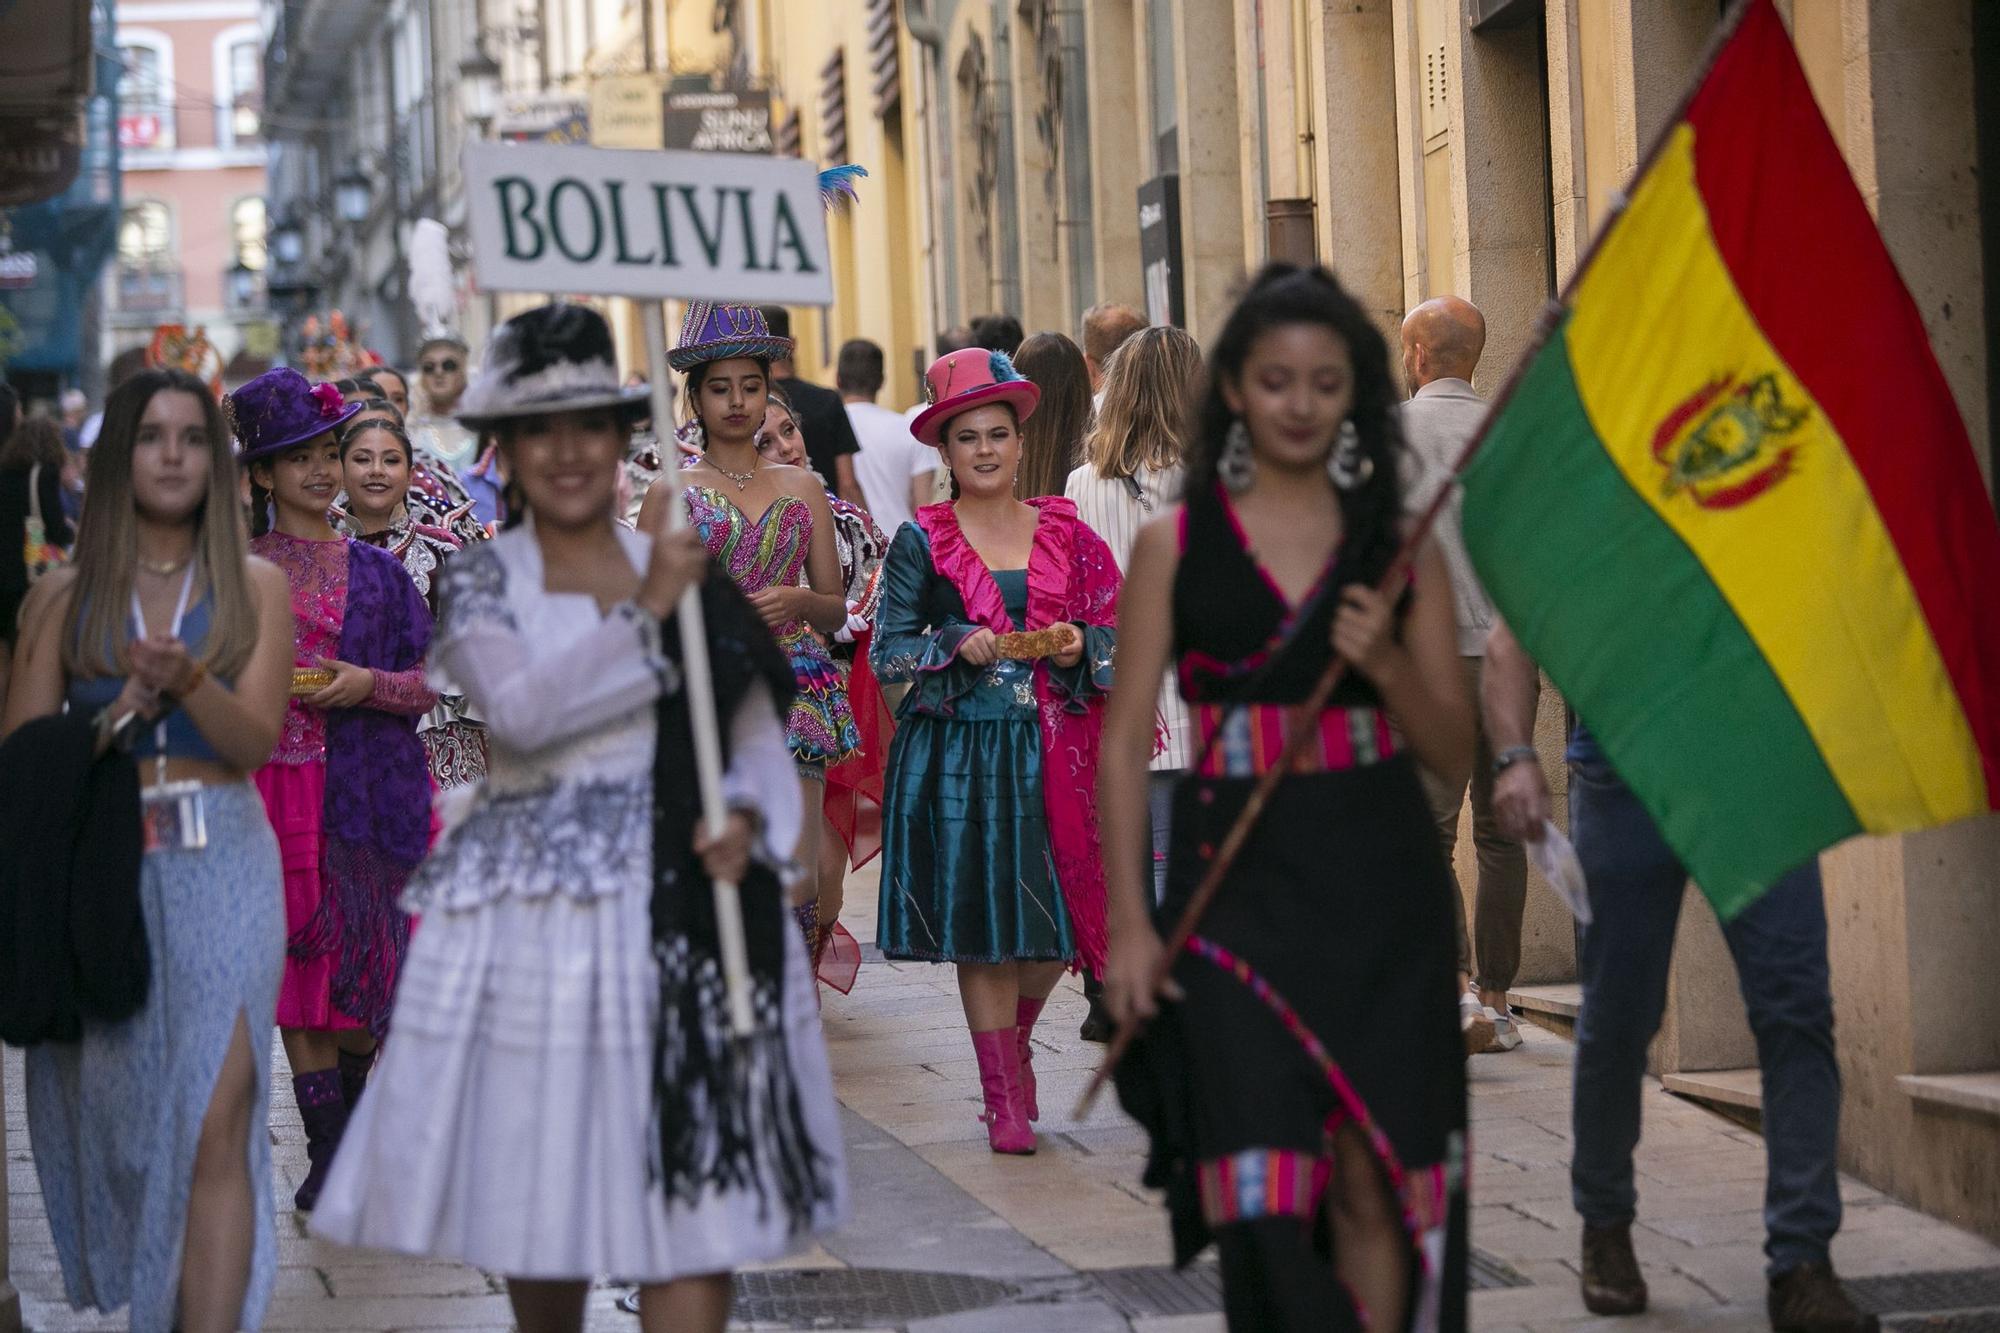 El festival de música y danzas populares llena las calles de Avilés de color